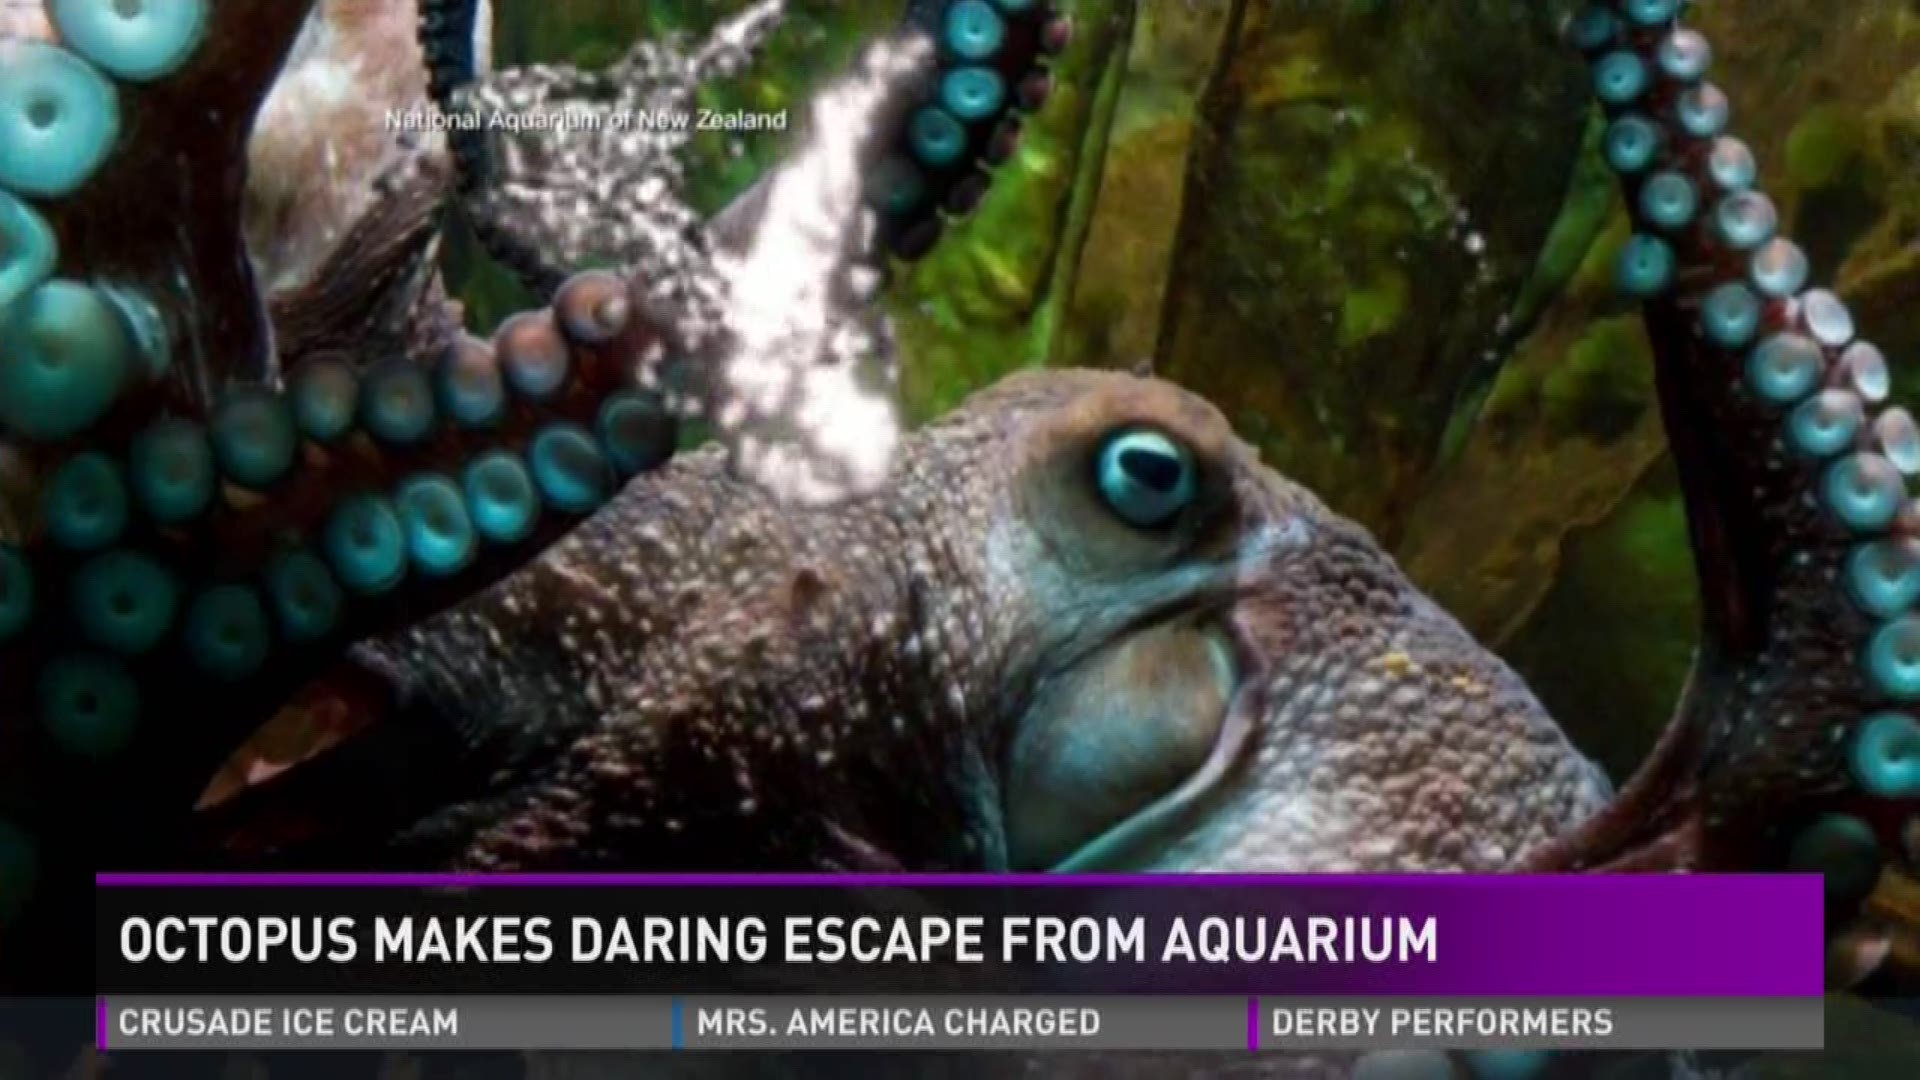 Octopus makes daring escape from aquarium